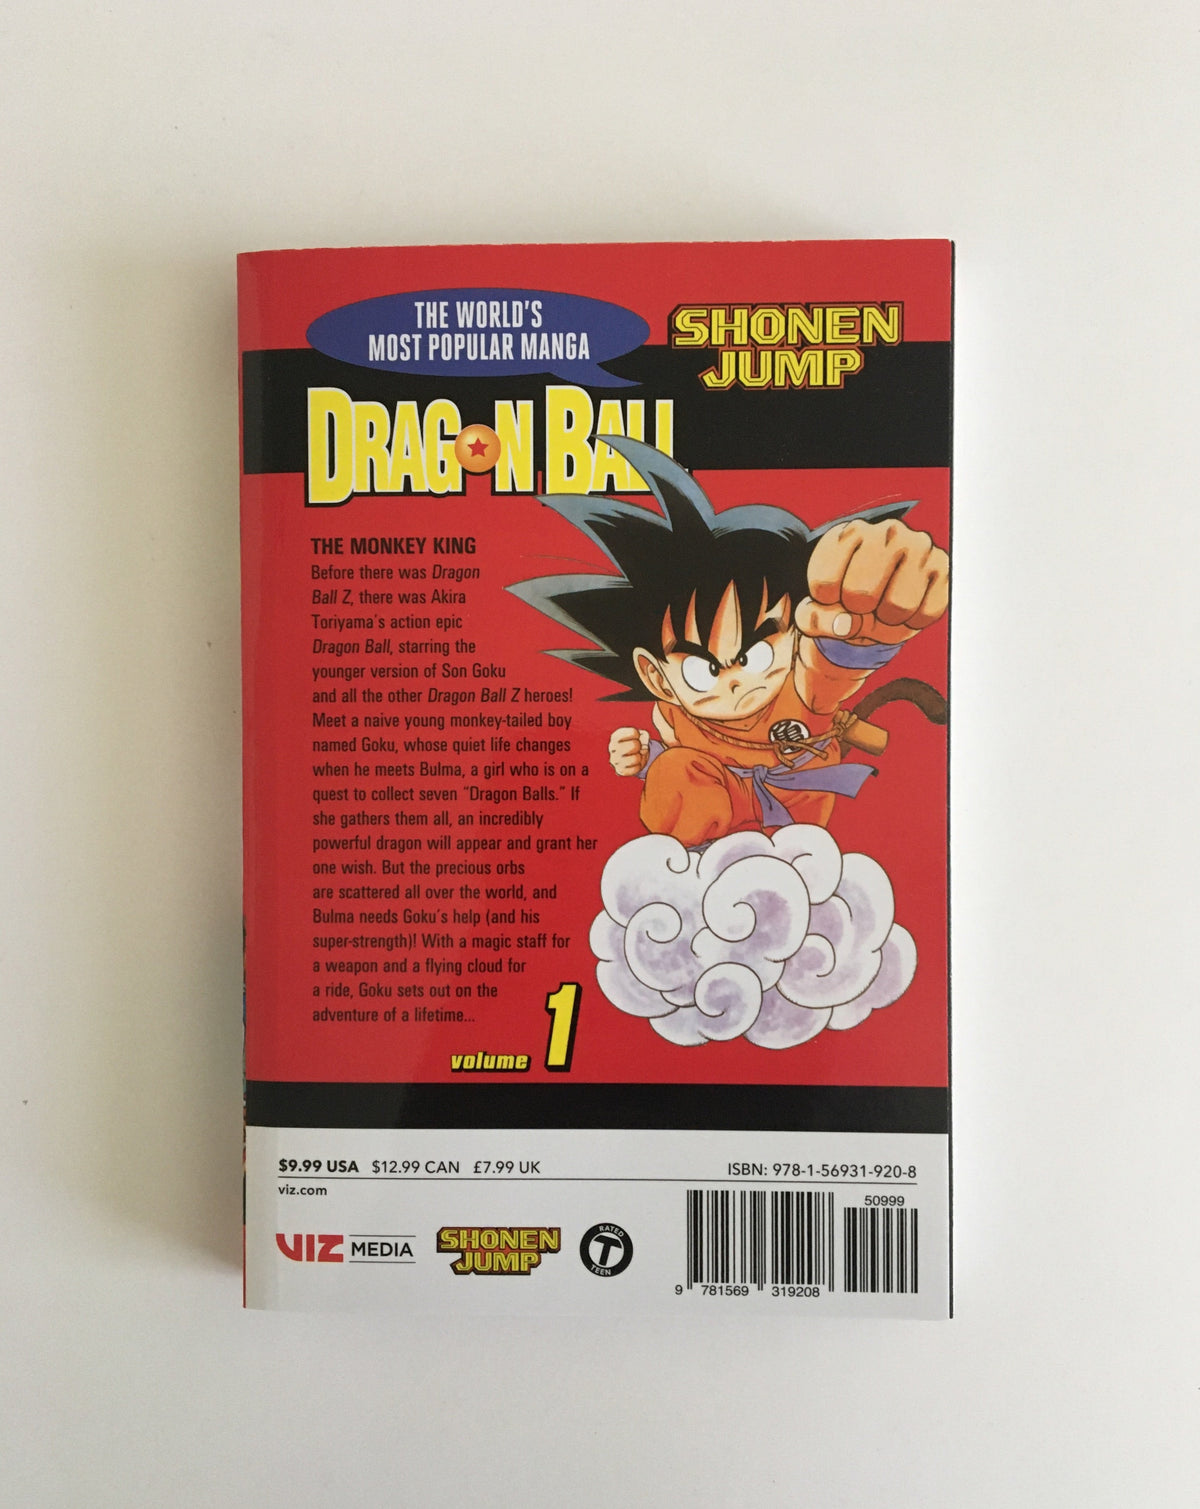 Dragon Ball by Akira Toriyama